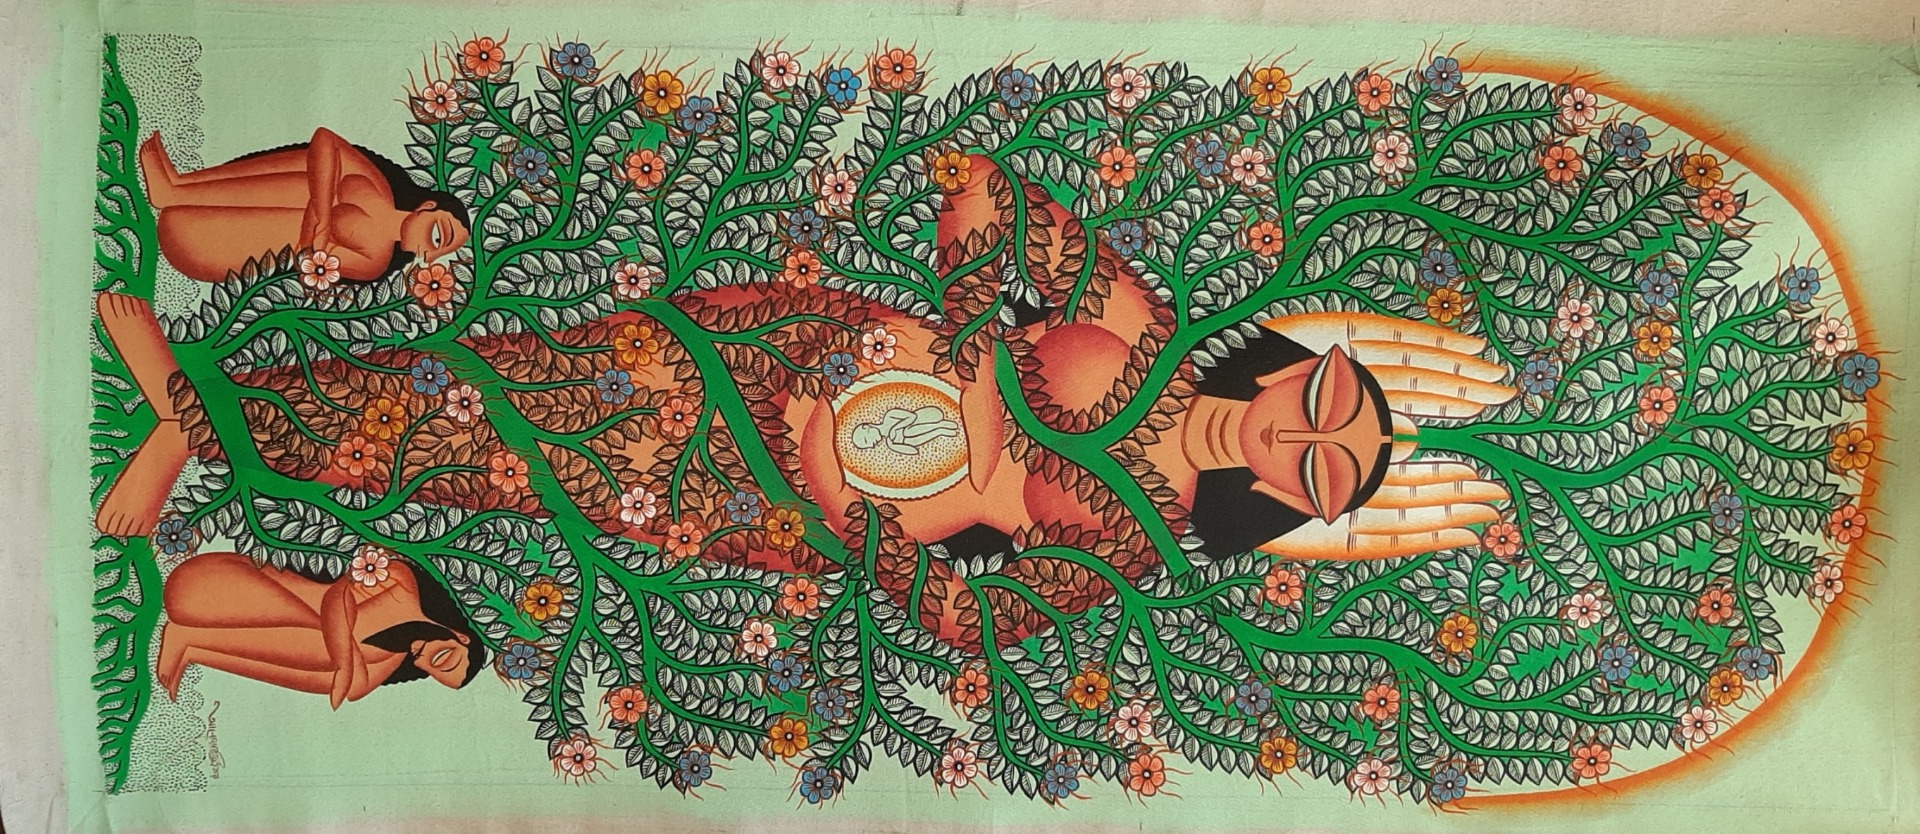 Prakreeti Devi